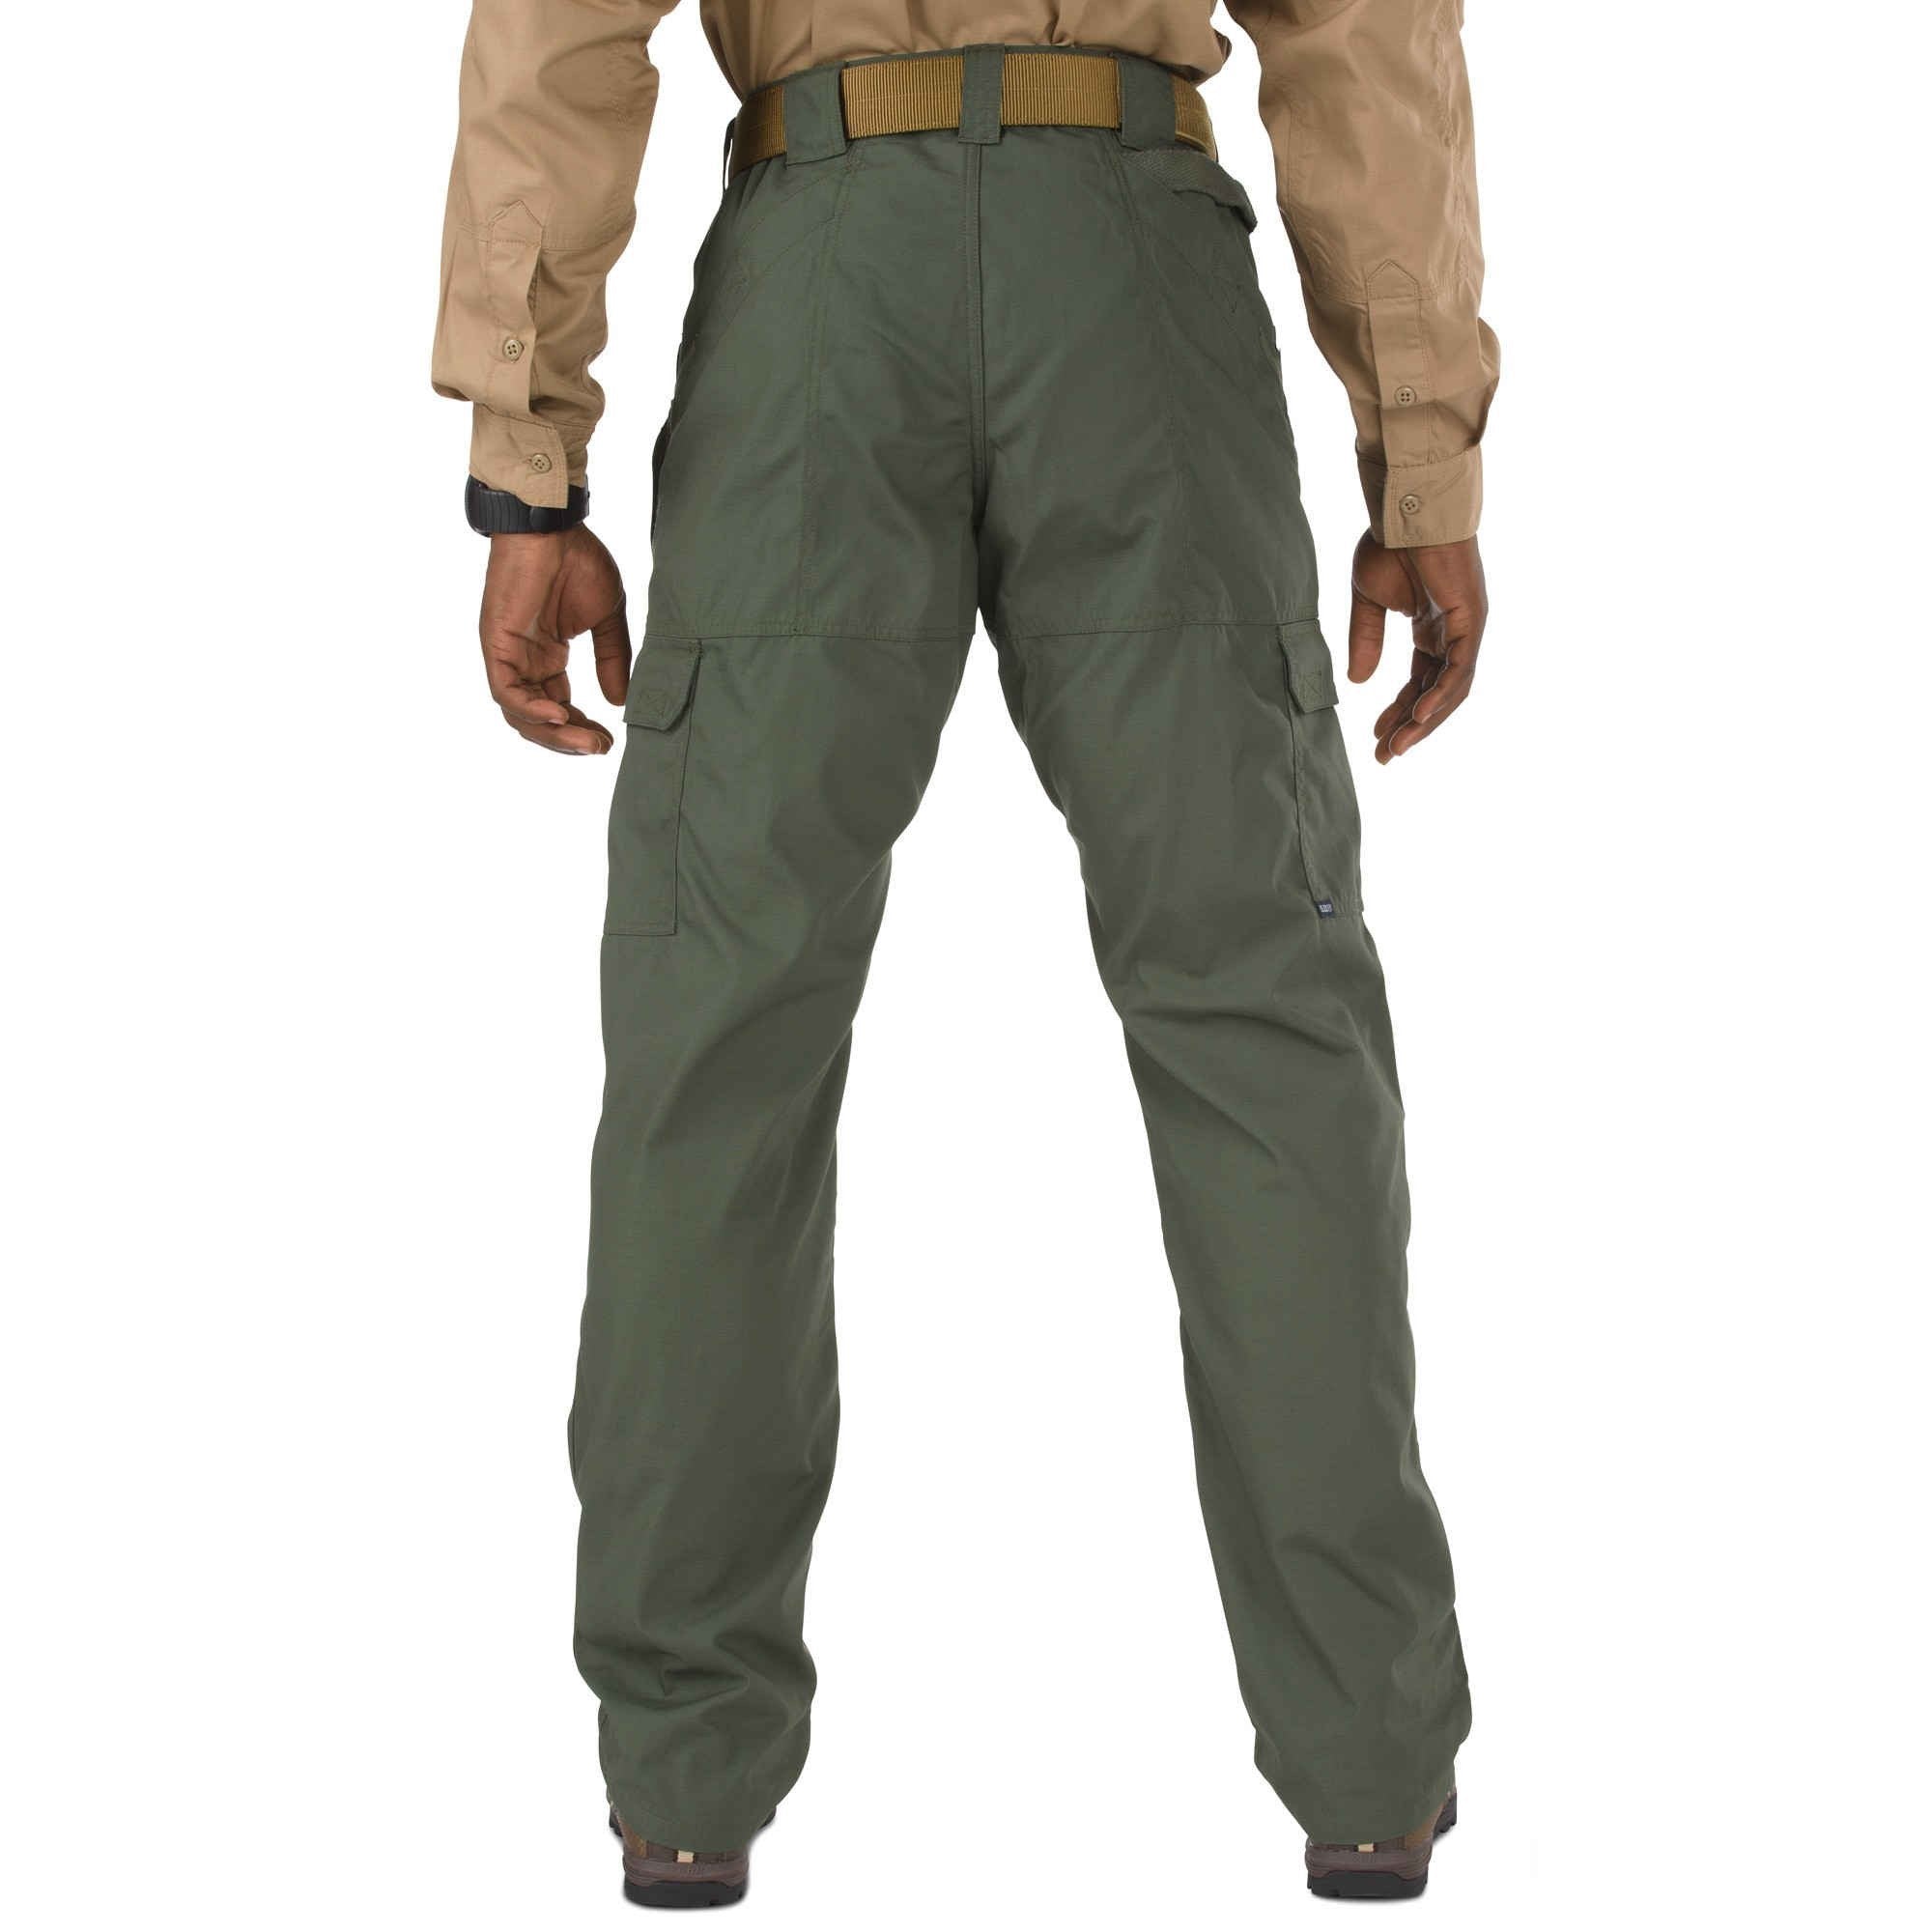 5.11 Tactical Taclite Pro Pants - TDU Green Pants 5.11 Tactical Tactical Gear Supplier Tactical Distributors Australia